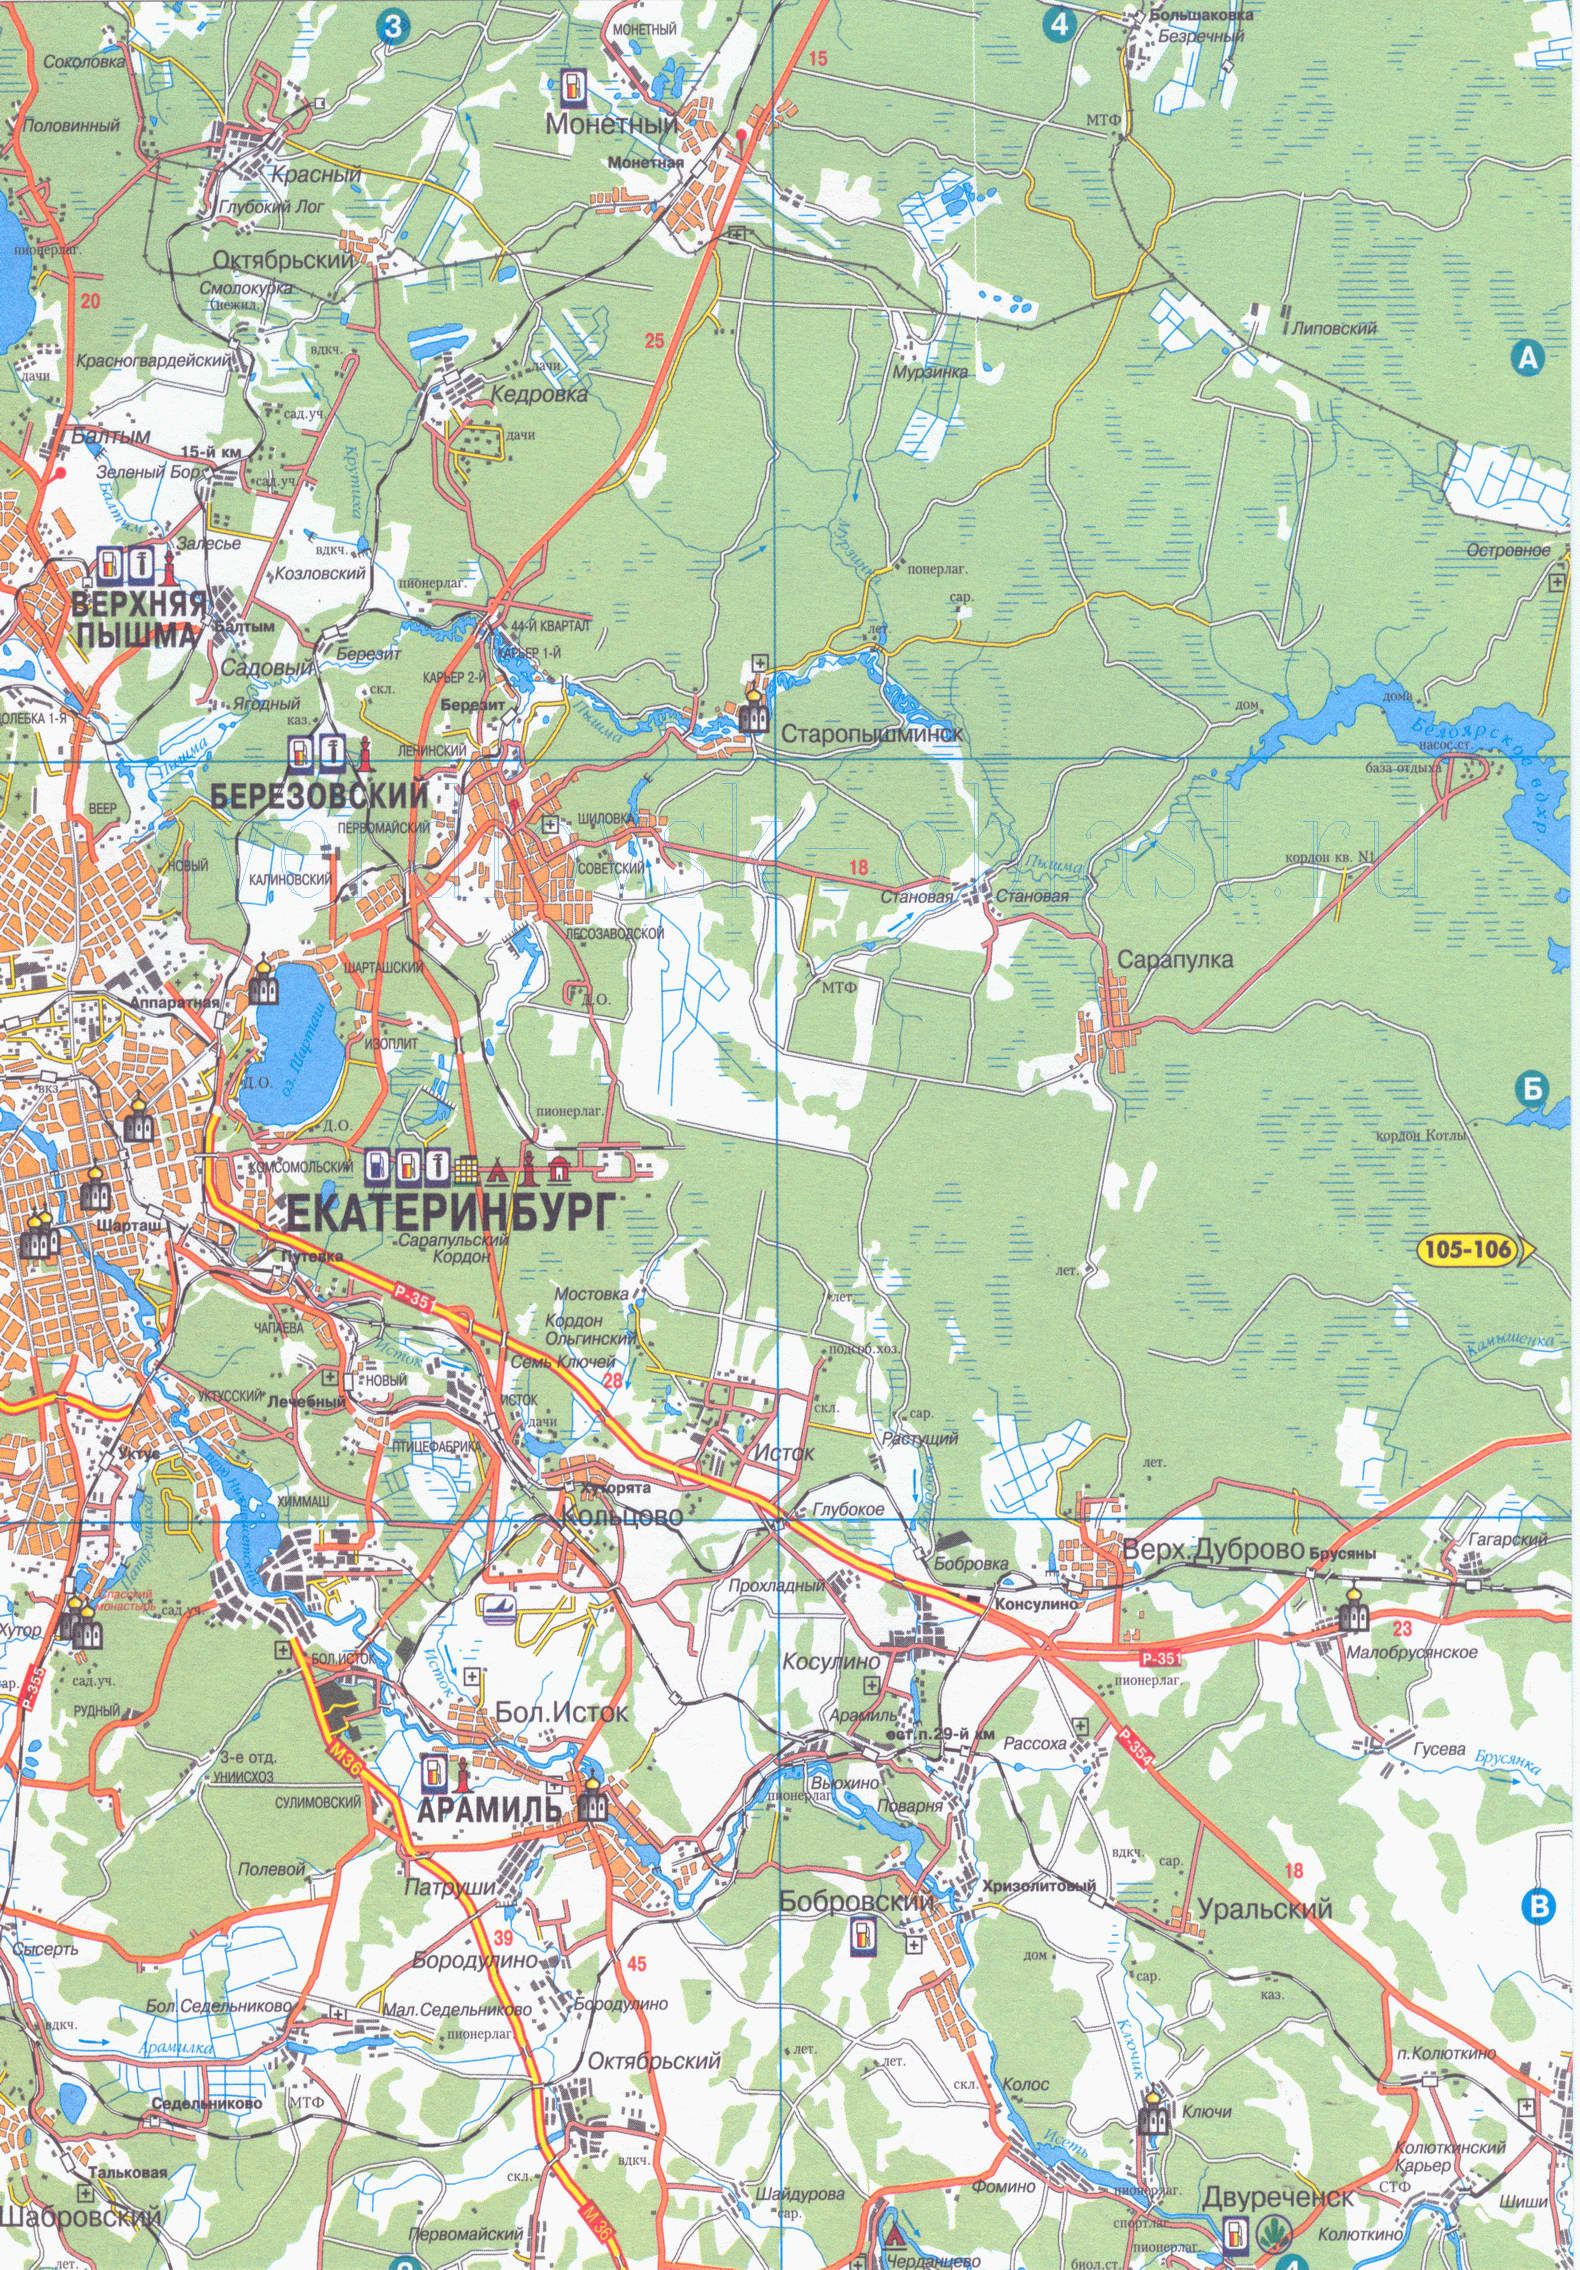 Карта окрестностей Екатеринбурга. Подробная карта пригородов Екатеринбурга, B0 - 